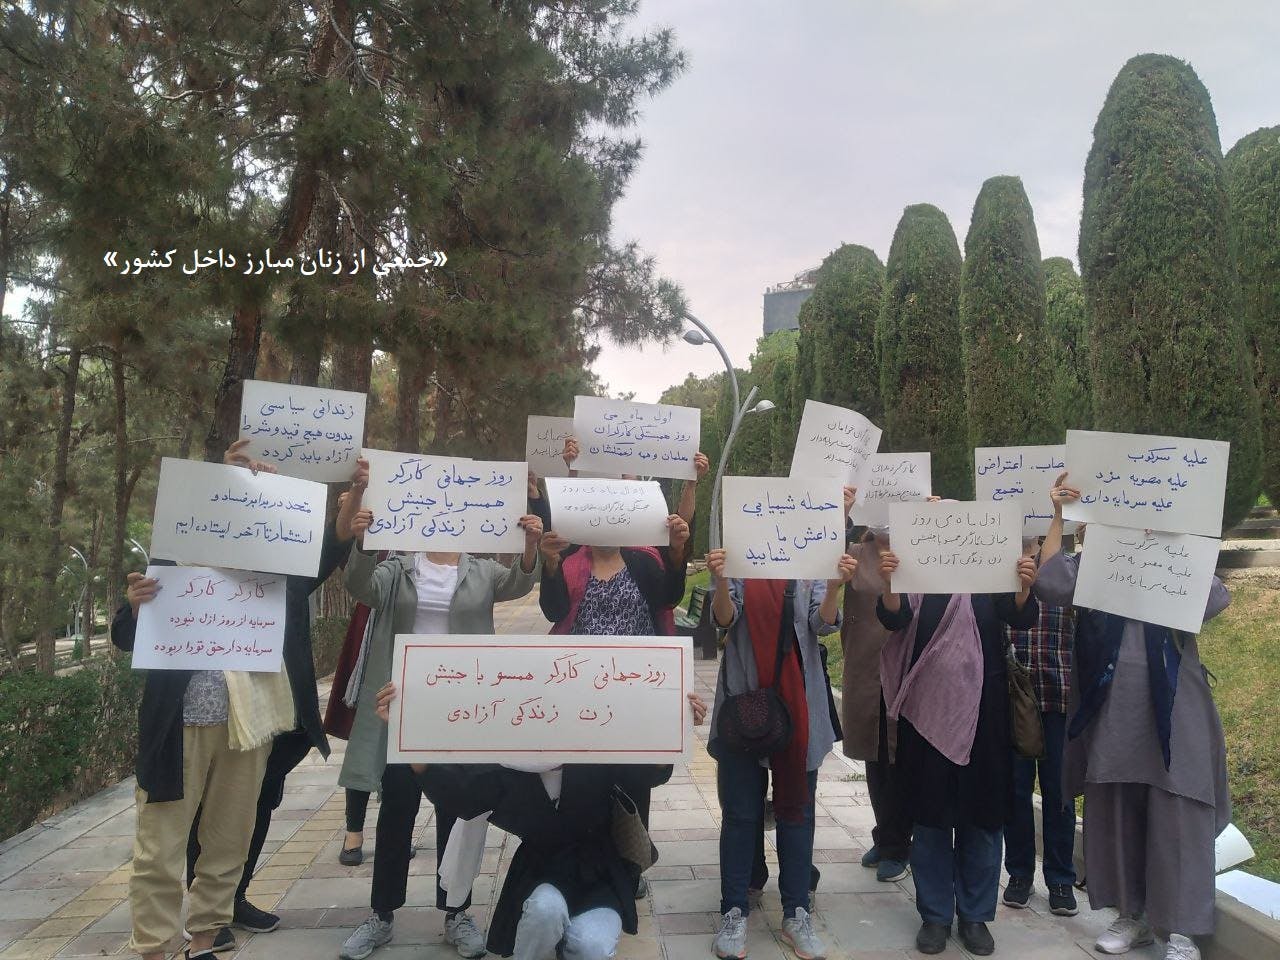 آکسیون جمعی از زنان تهران و کرج، در آستانه اول ماه مه روز جهانی کارگر (۱۴۰۲)